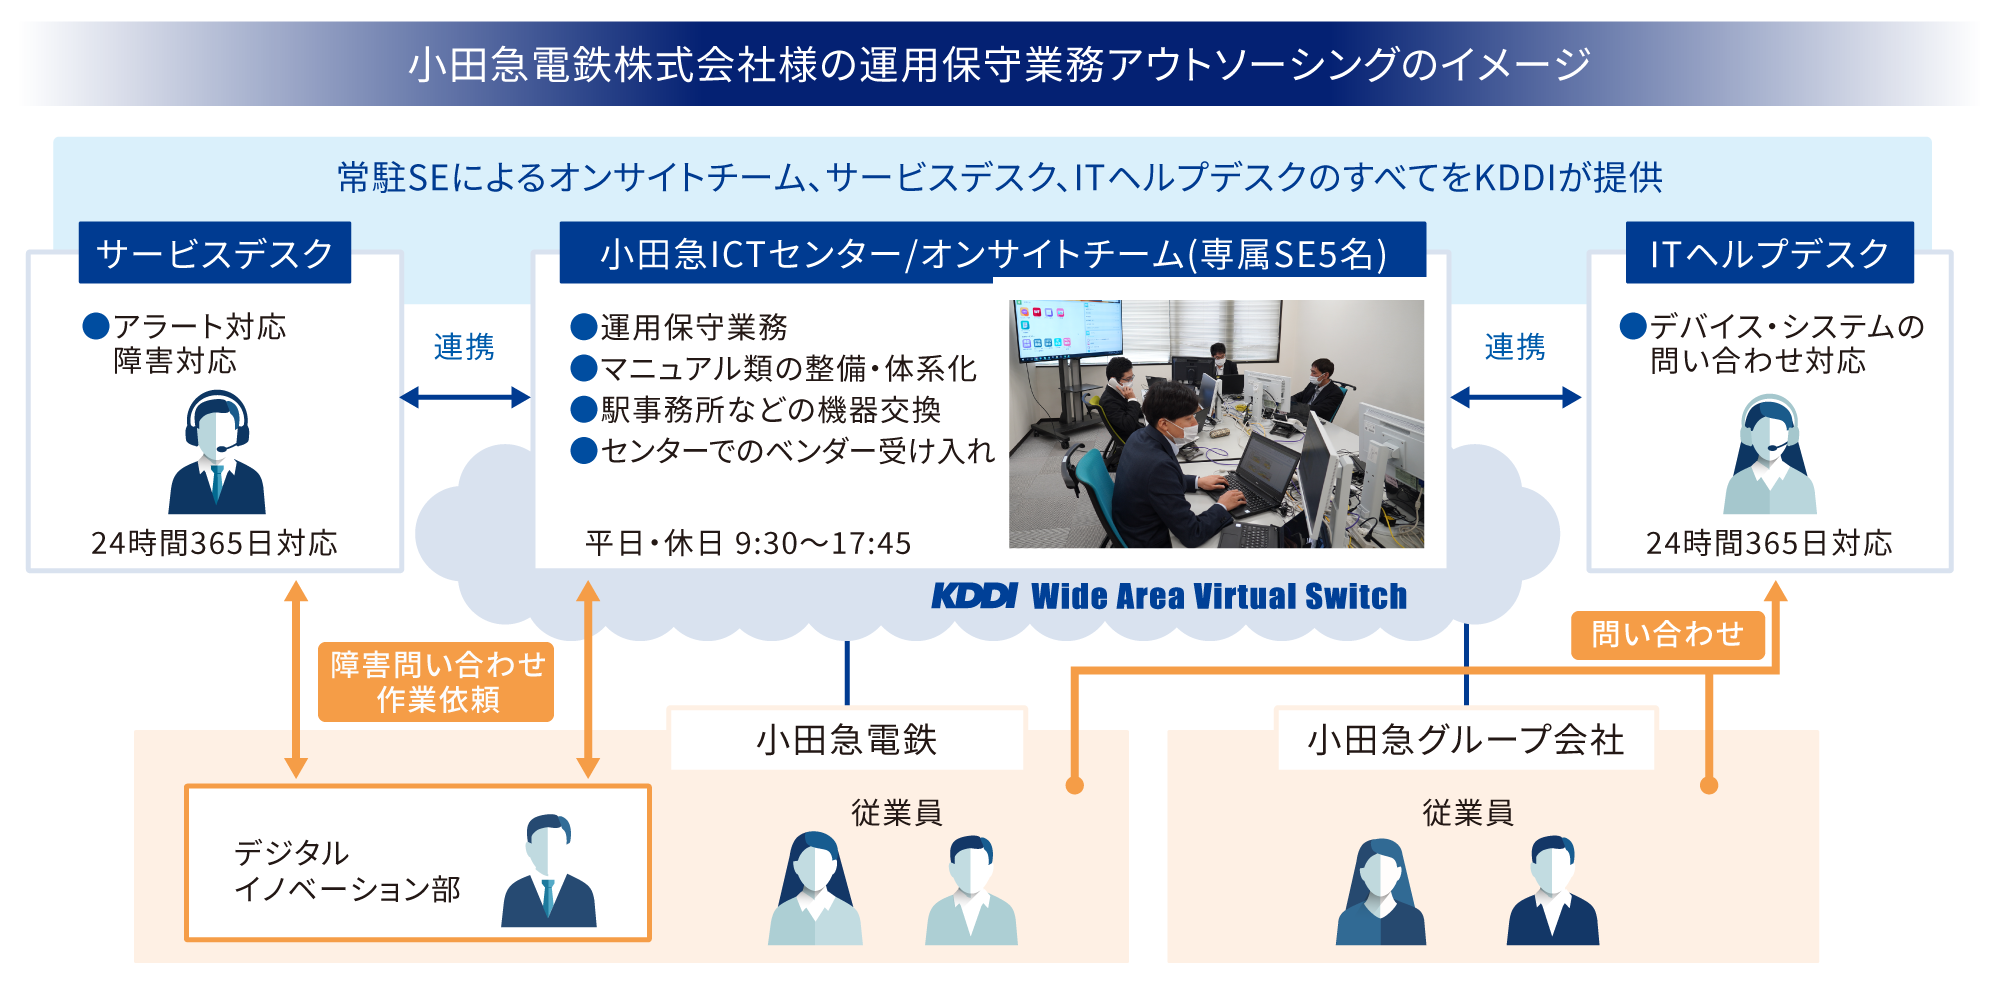 小田急電鉄株式会社様の運用保守業務アウトソーシングのイメージ。常駐SEによるオンサイトチーム、サービスデスク、ITヘルプデスクのすべてをKDDIが提供。